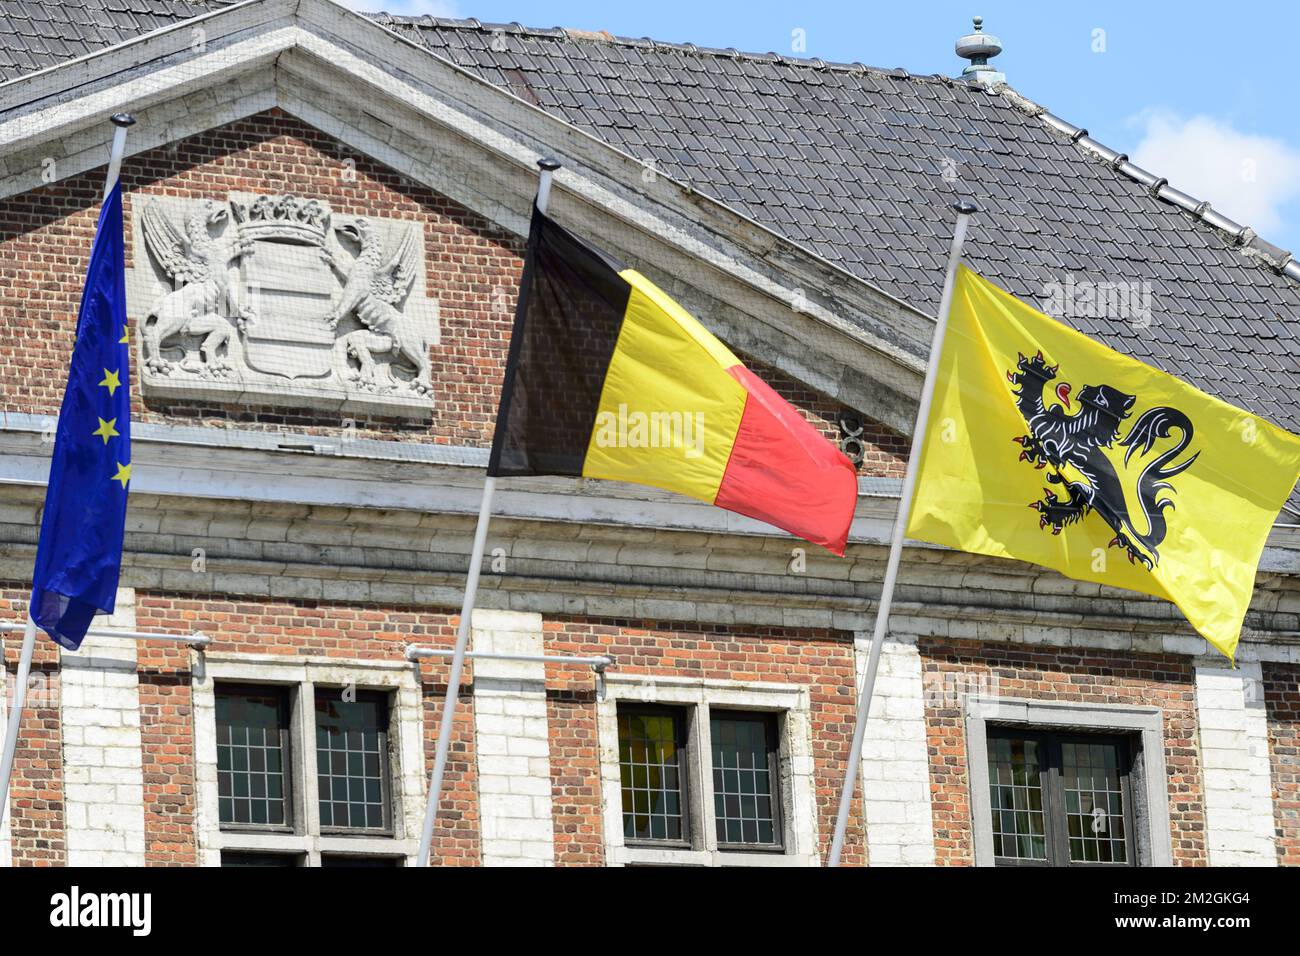 Drapeaux français et européen avec porte-drapeau pour écoles